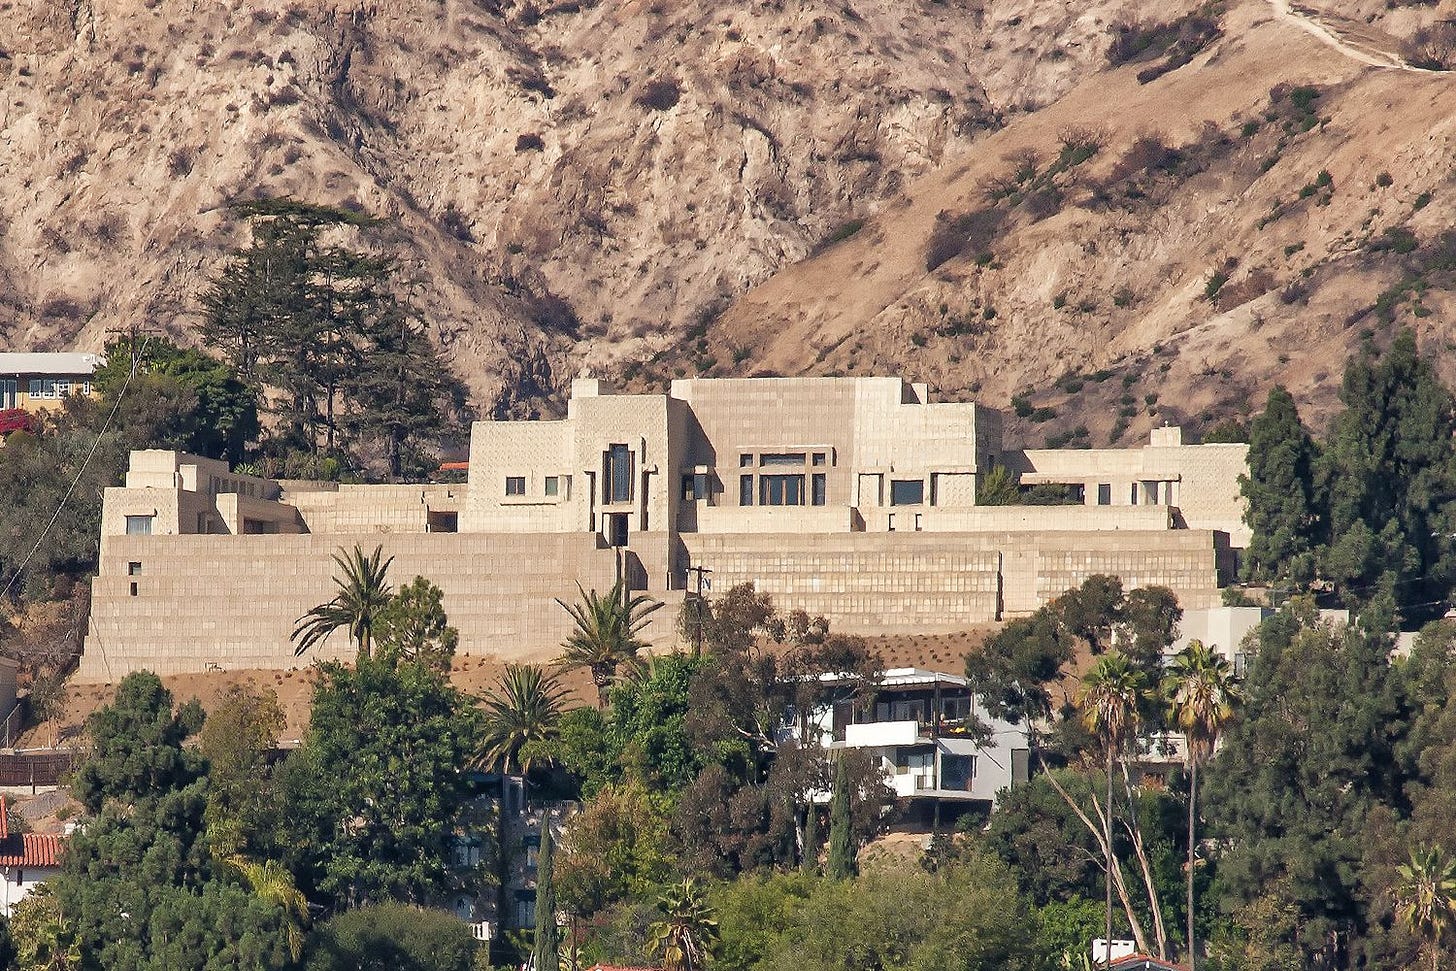 Ennis House: Frank Lloyd Wright in Los Angeles